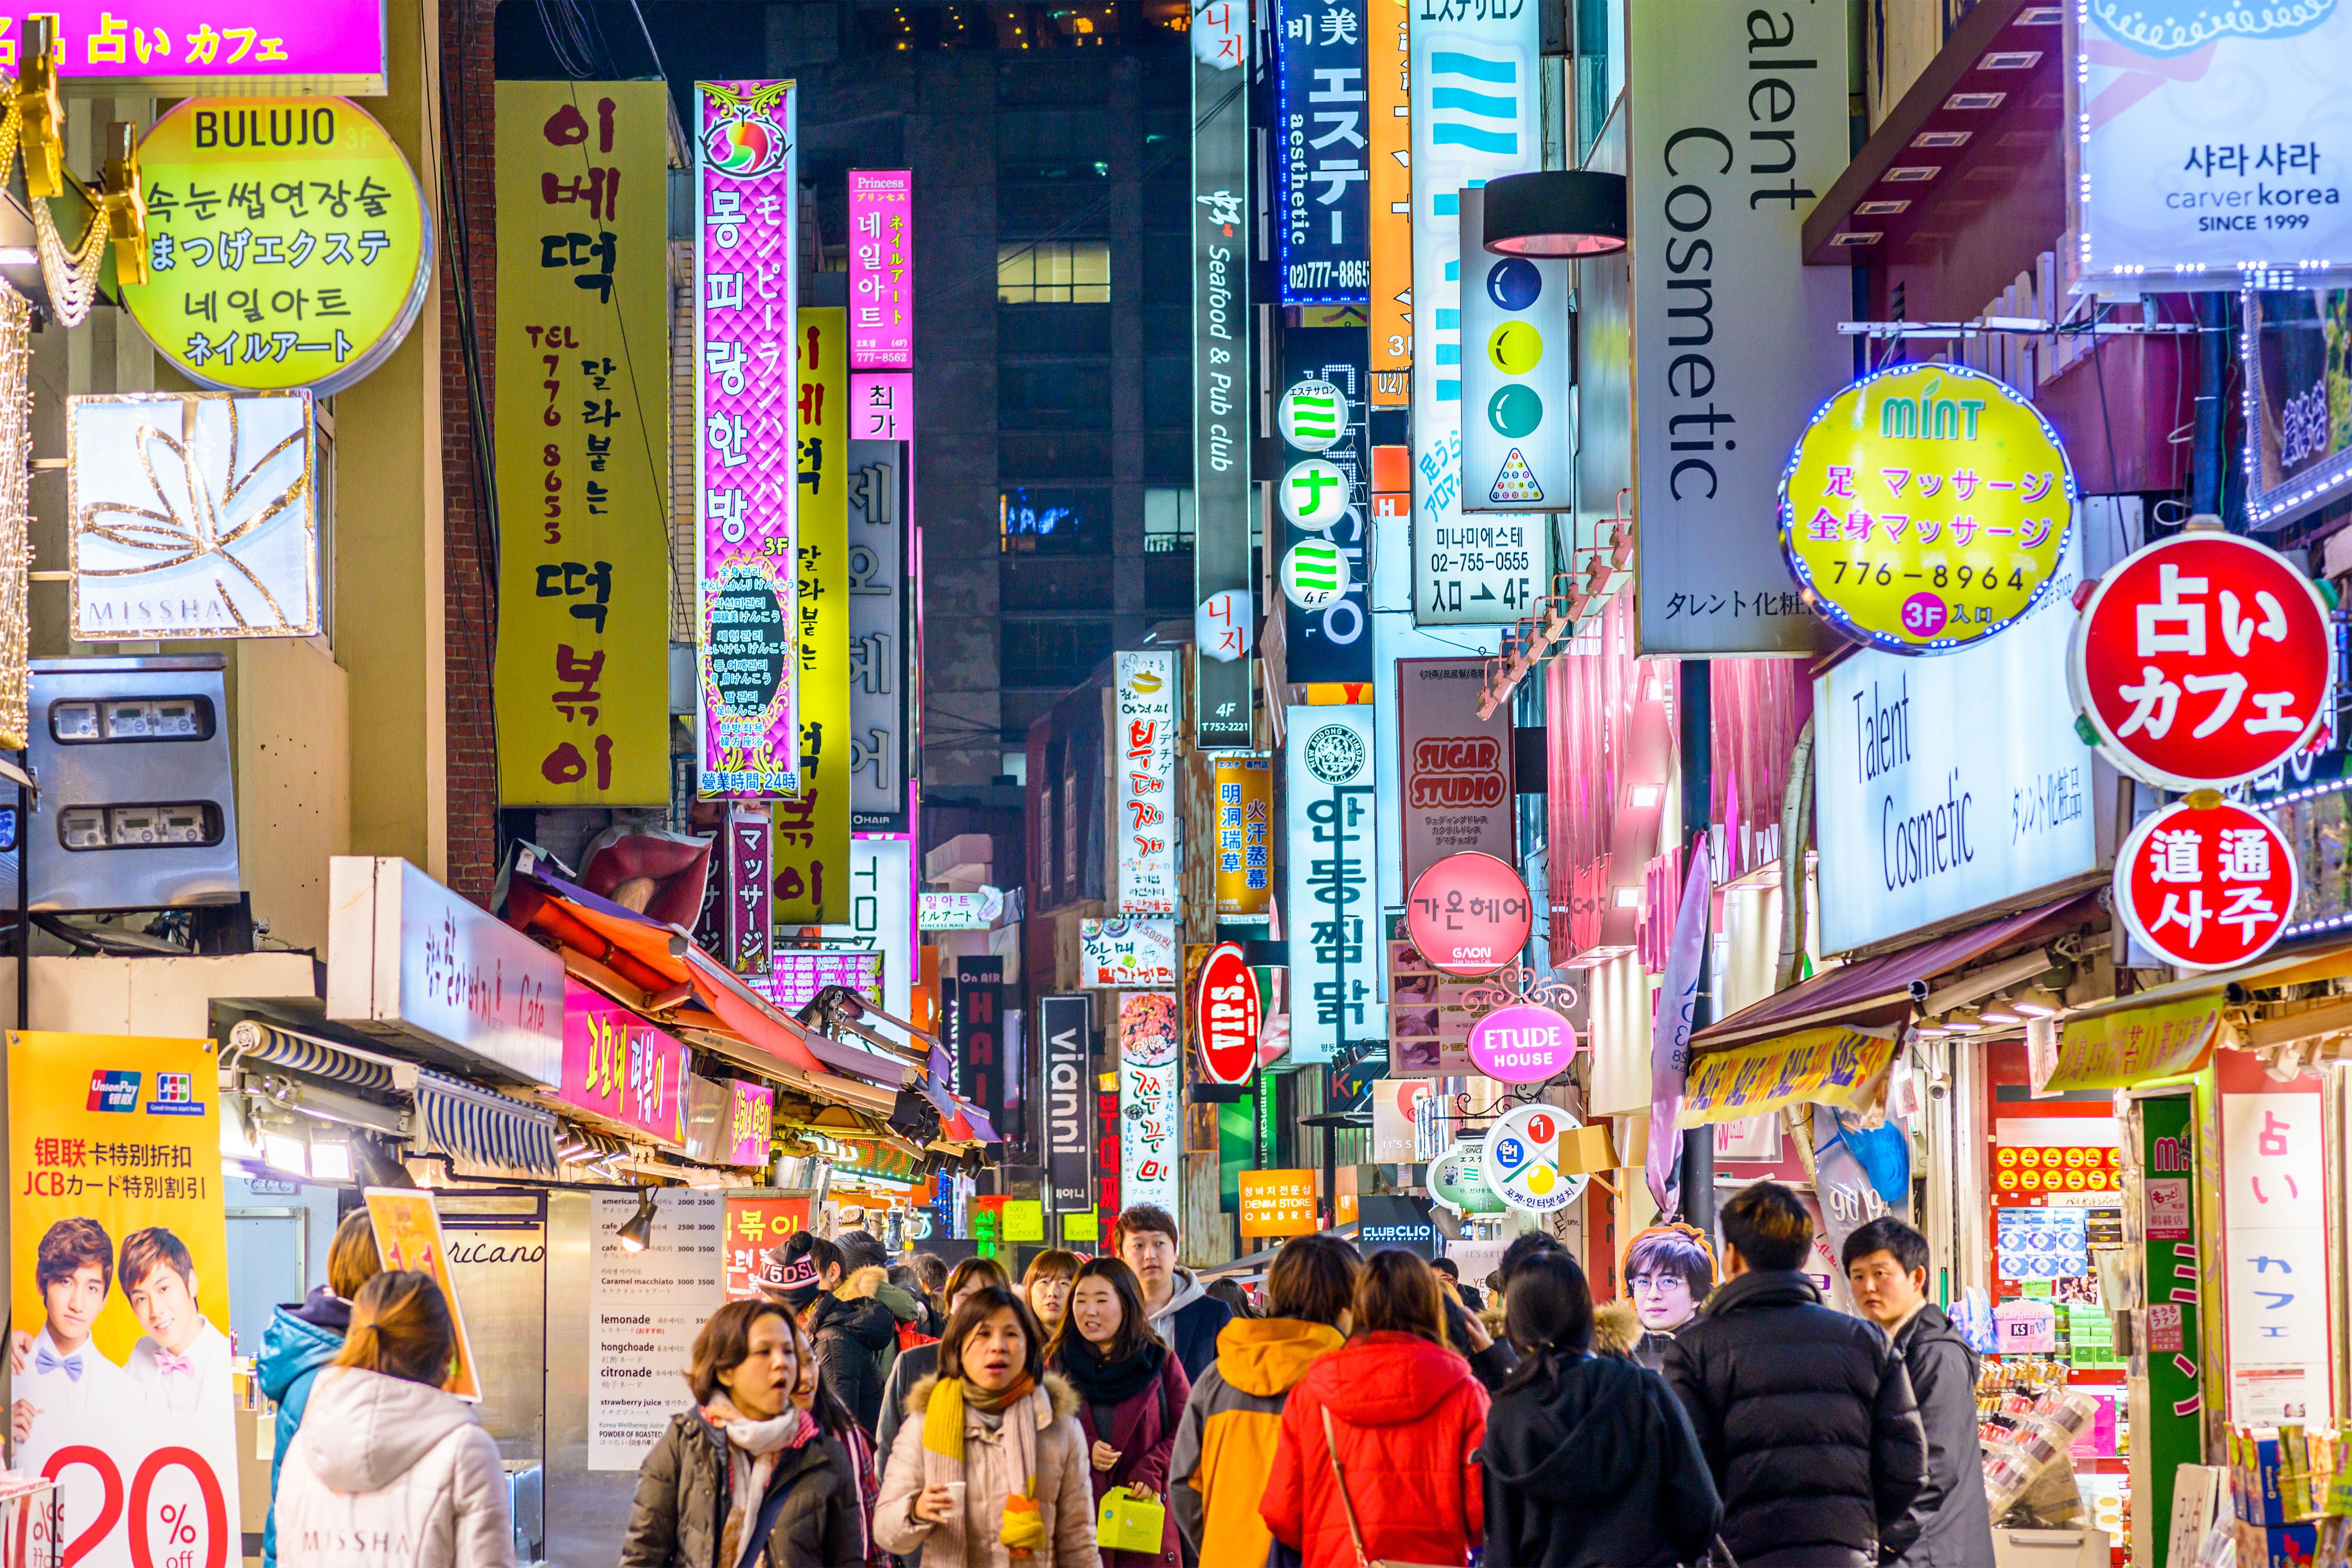 Most Instagrammable Spots in Seoul